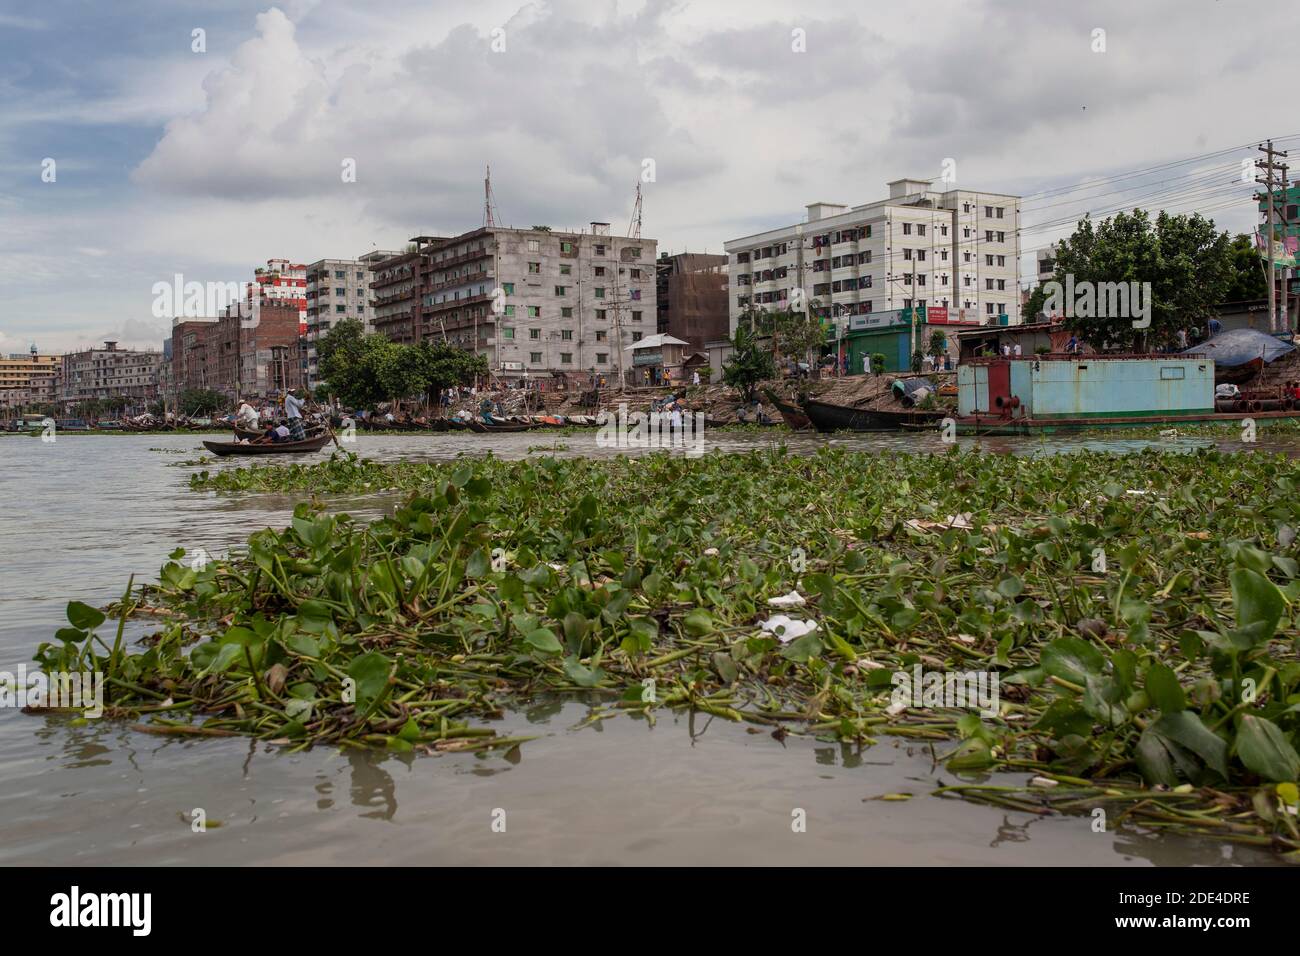 Plantas de agua, detrás de ellos barcos, casas, puerto, Dhaka, Bangladesh Foto de stock